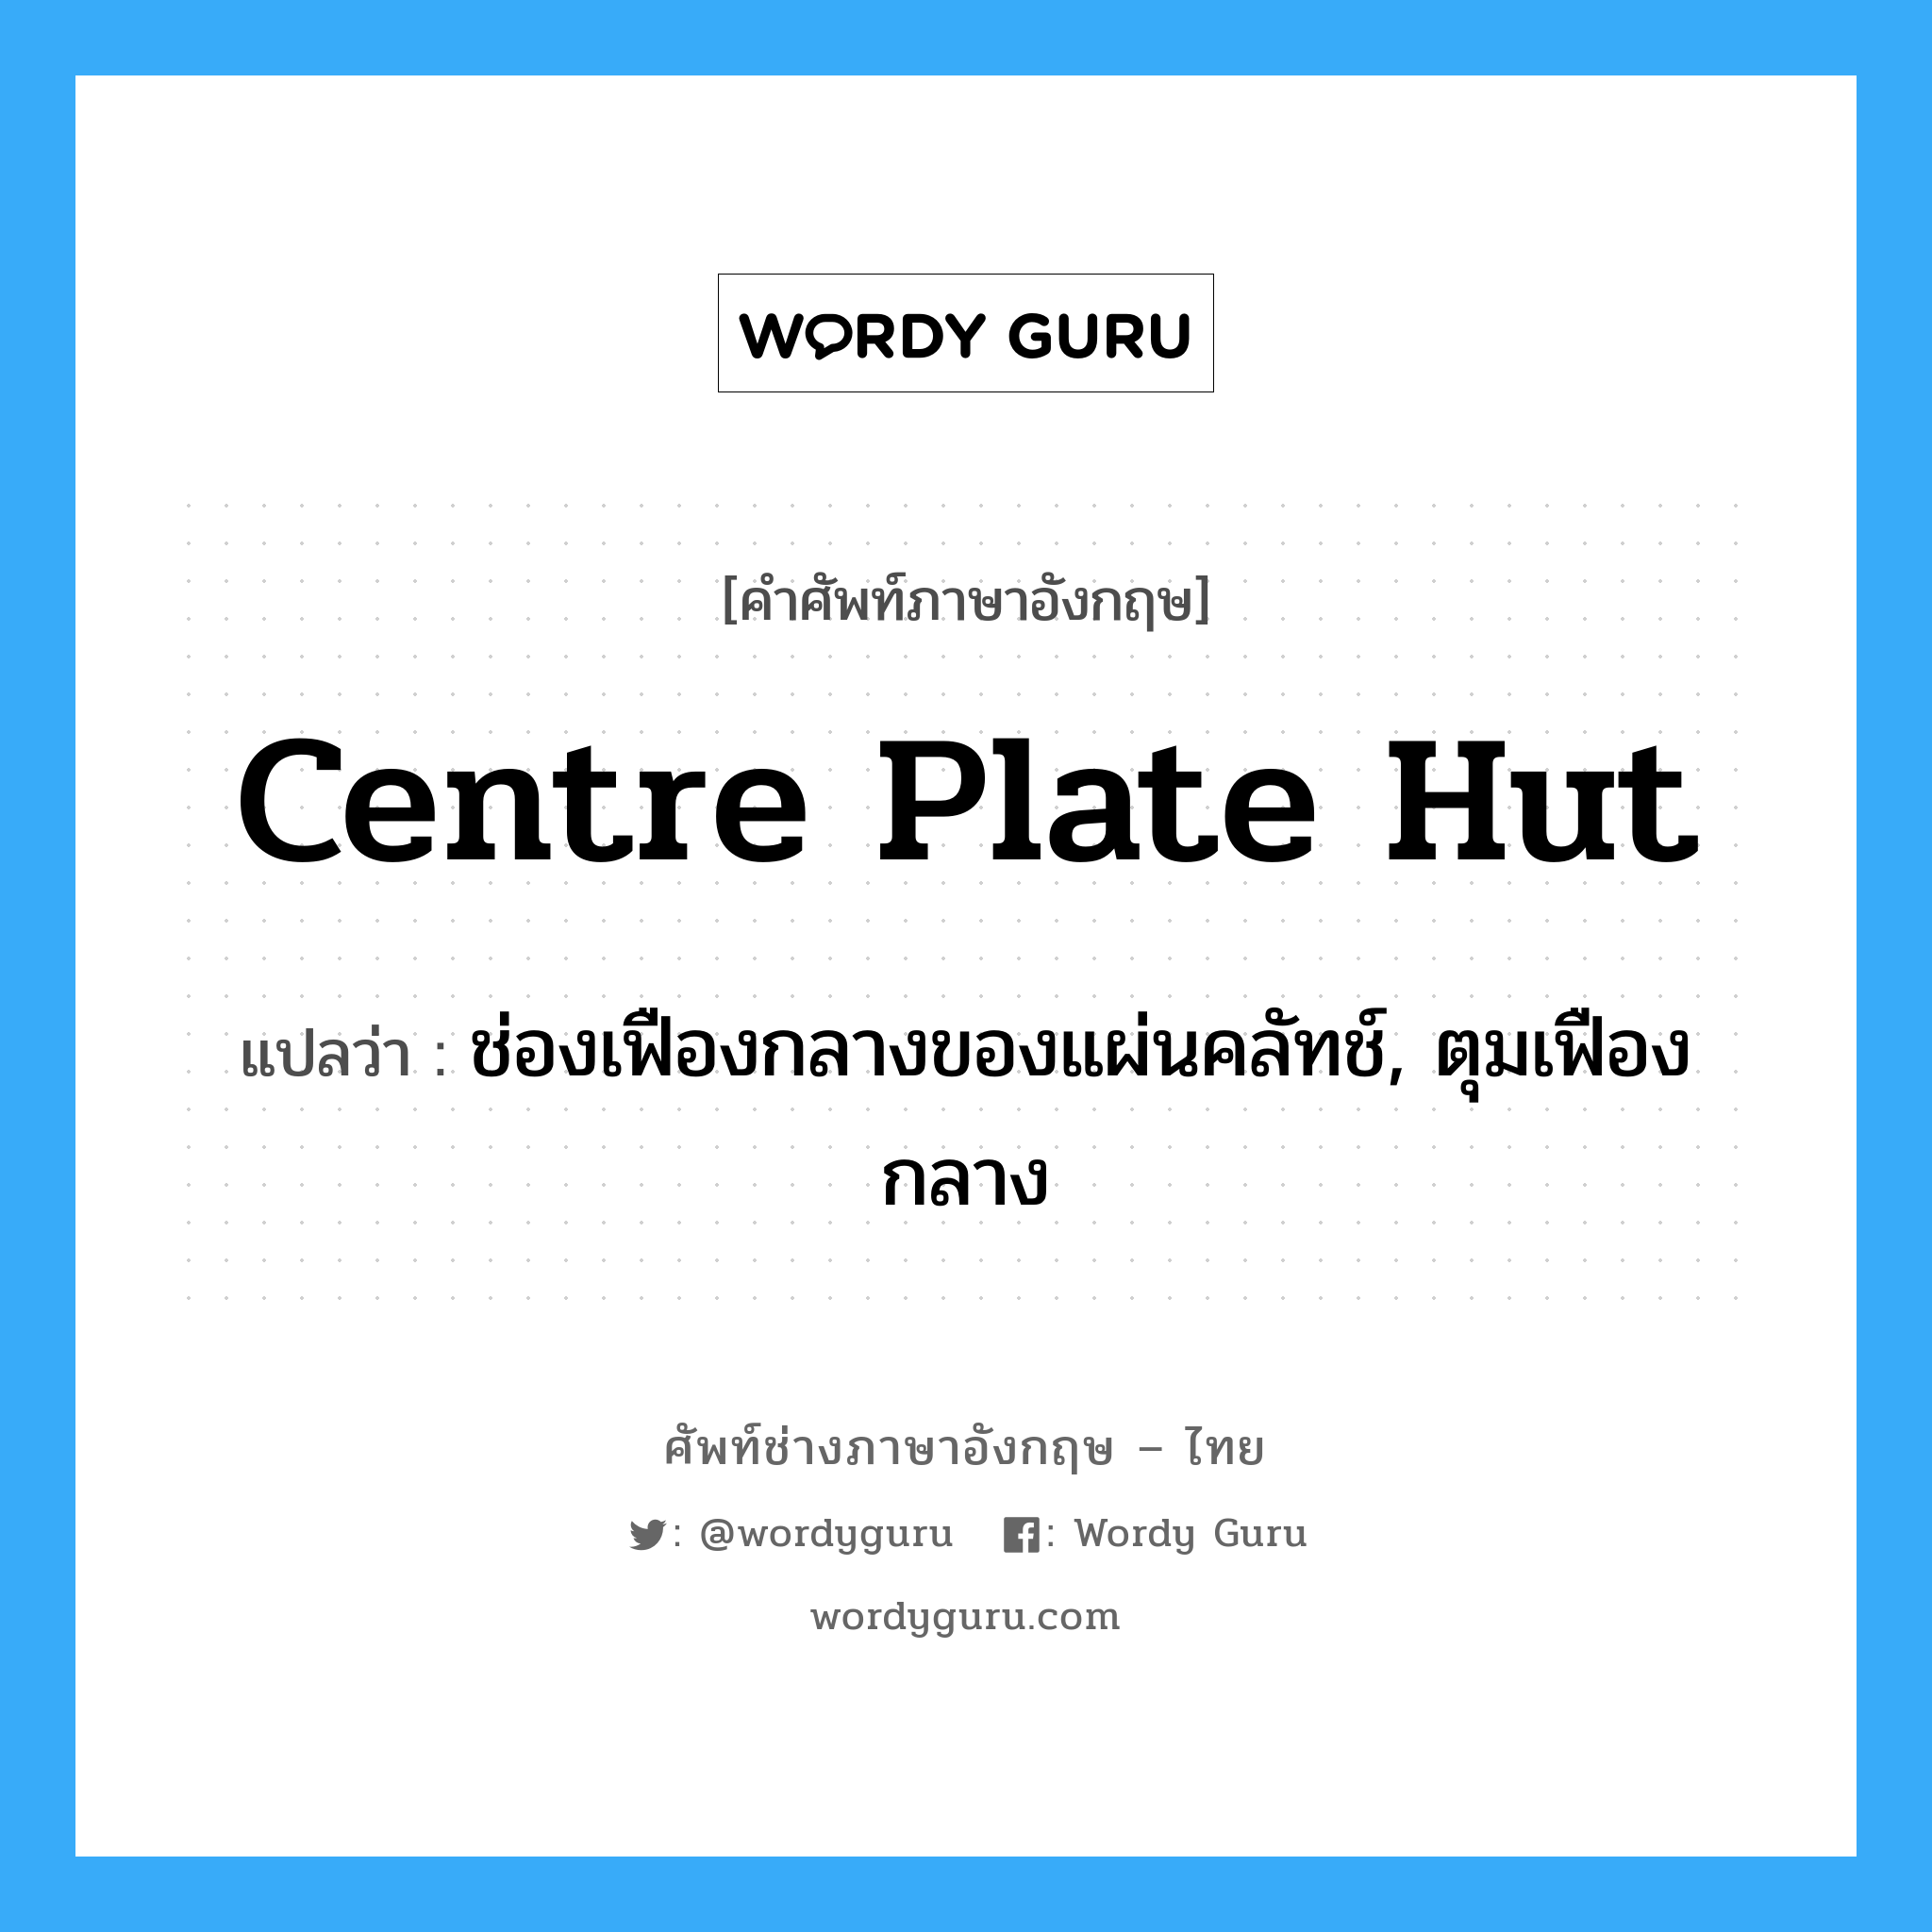 centre plate hut แปลว่า?, คำศัพท์ช่างภาษาอังกฤษ - ไทย centre plate hut คำศัพท์ภาษาอังกฤษ centre plate hut แปลว่า ช่องเฟืองกลางของแผ่นคลัทช์, ตุมเฟืองกลาง